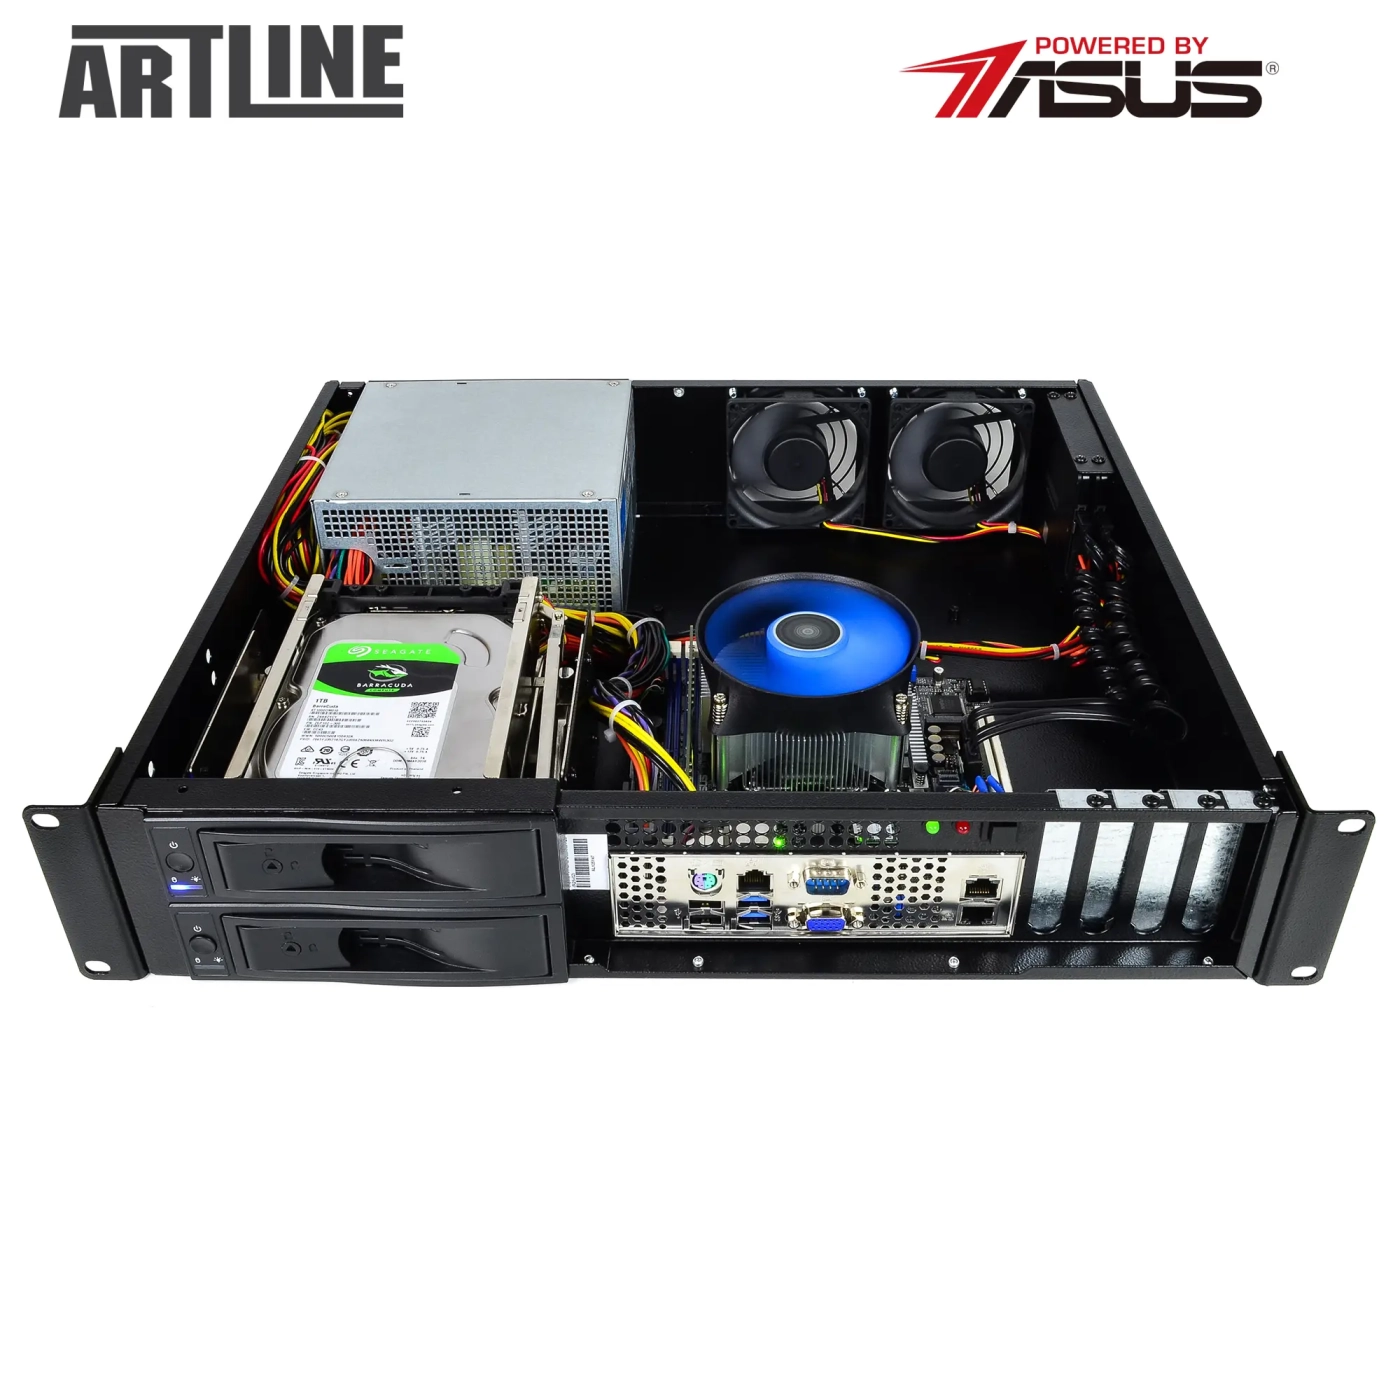 Купить Сервер ARTLINE Business R37 (R37v78) - фото 9